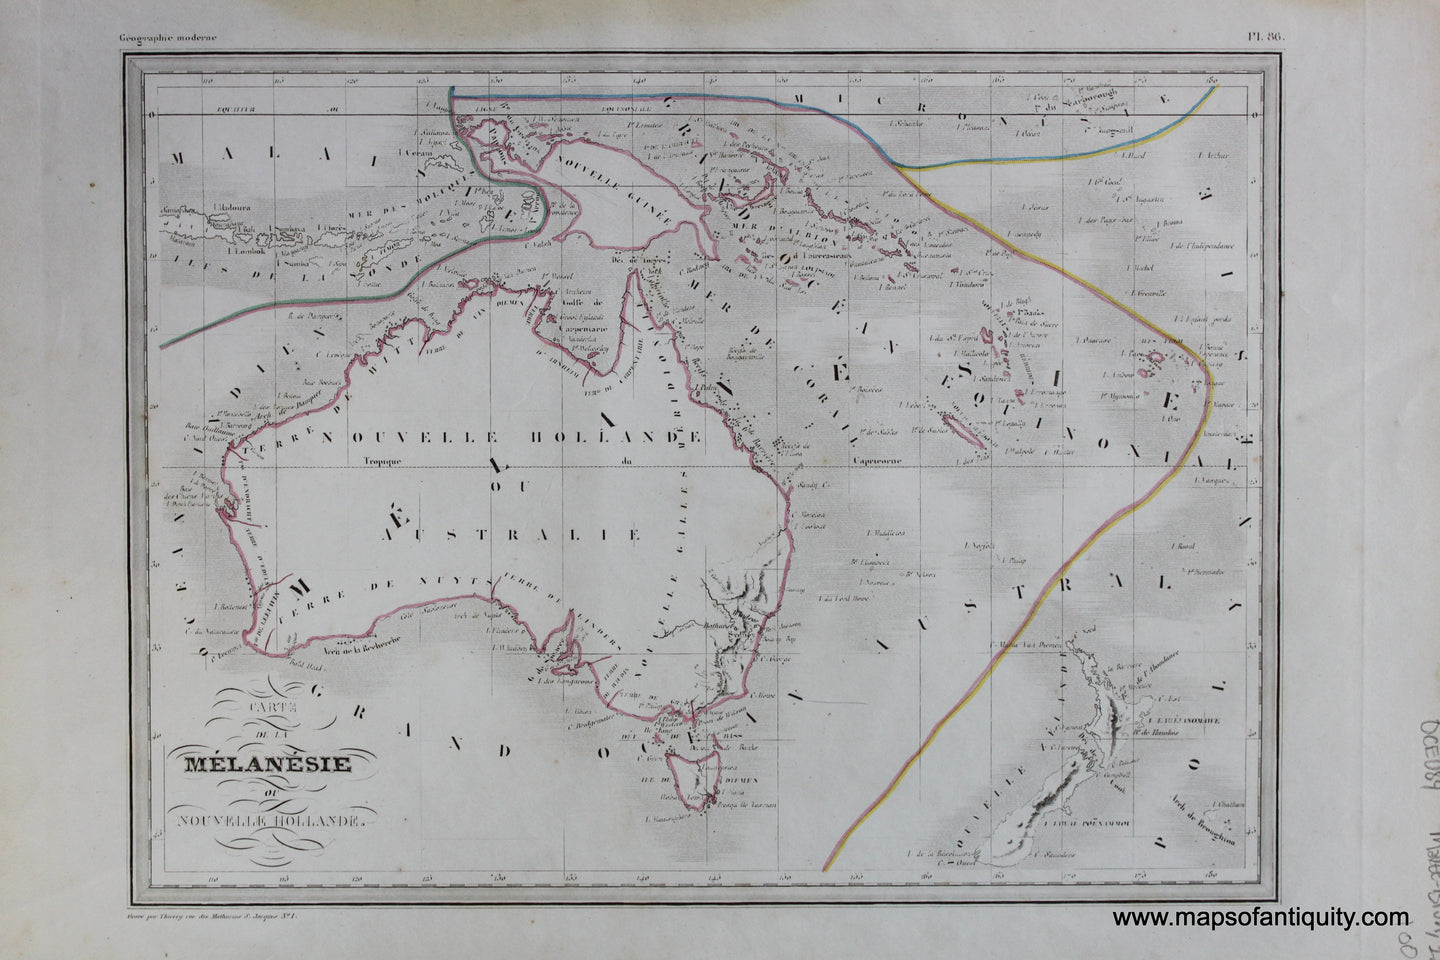 Antique-Hand-Colored-Map-Carte-de-La-Melanesie-ou-Nouvelle-Hollande-Australia-&-Pacific--1846-M.-Malte-Brun-Maps-Of-Antiquity